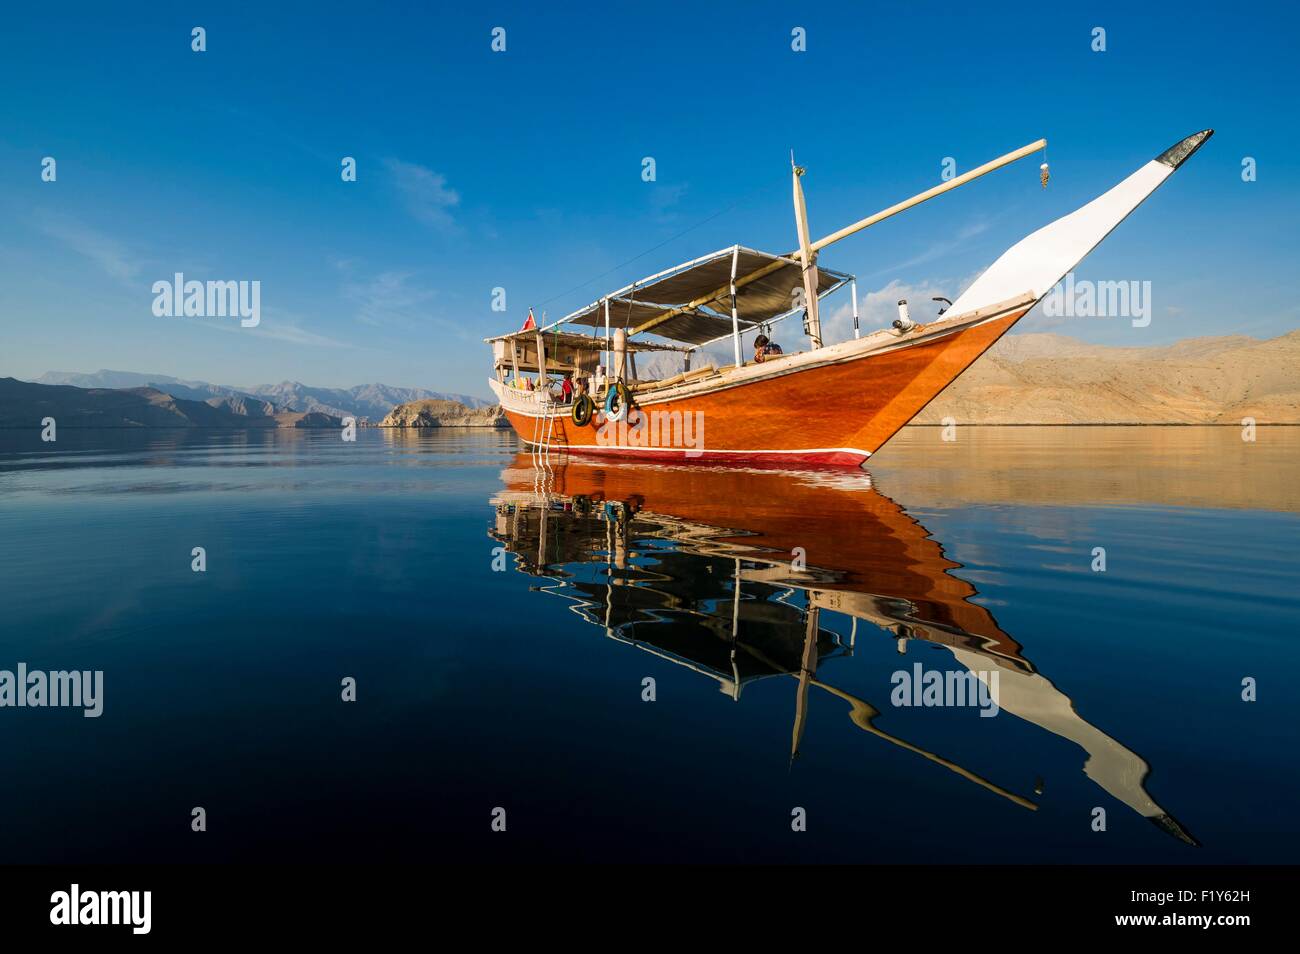 Oman, Musandam, Khasab, croisière dans les fjords sur un dhow, bateau traditionnel en bois Banque D'Images